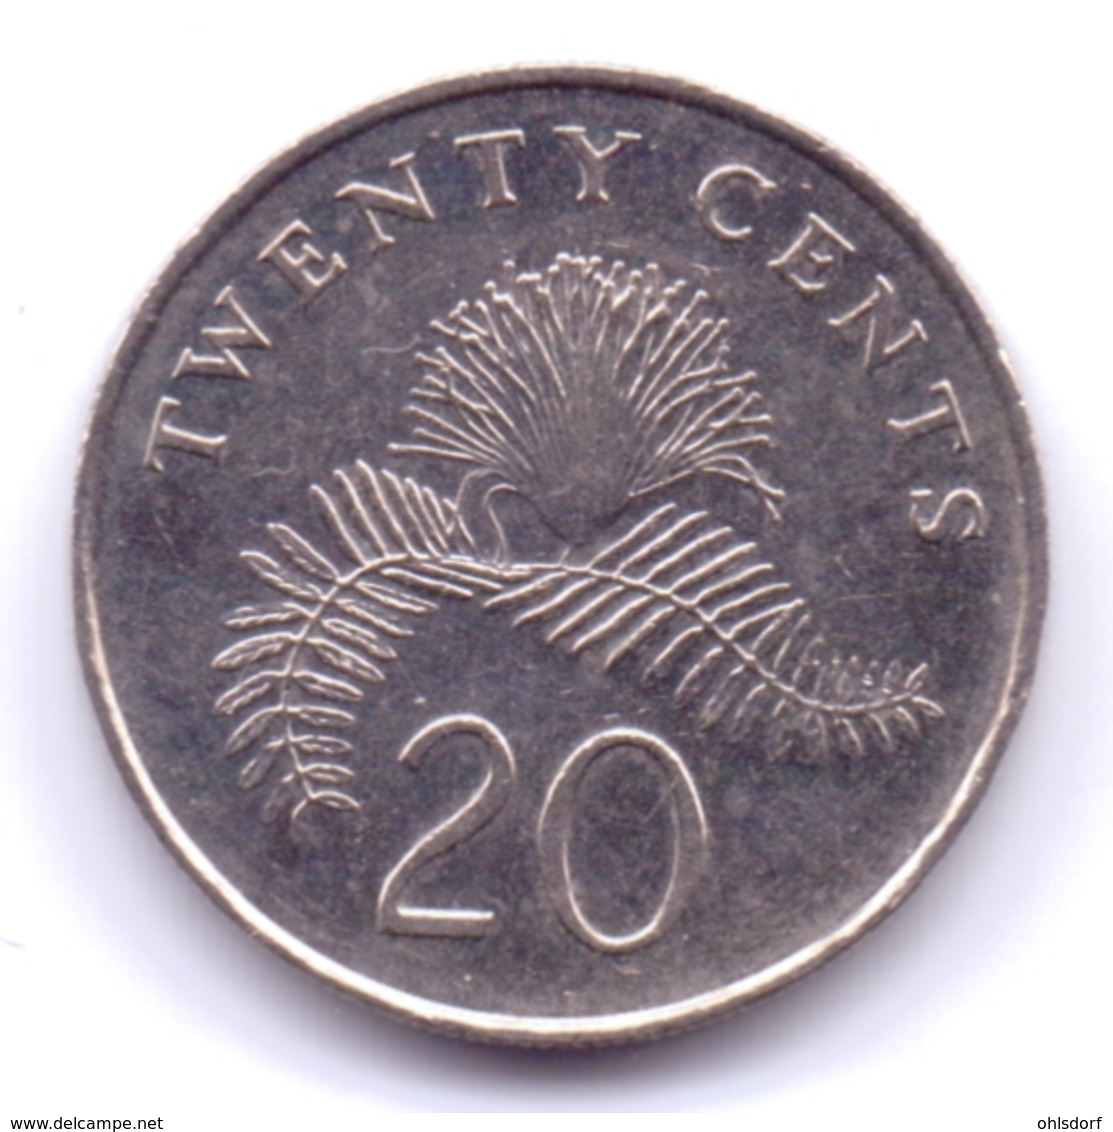 SINGAPORE 2010: 20 Cents, KM 101 - Singapour